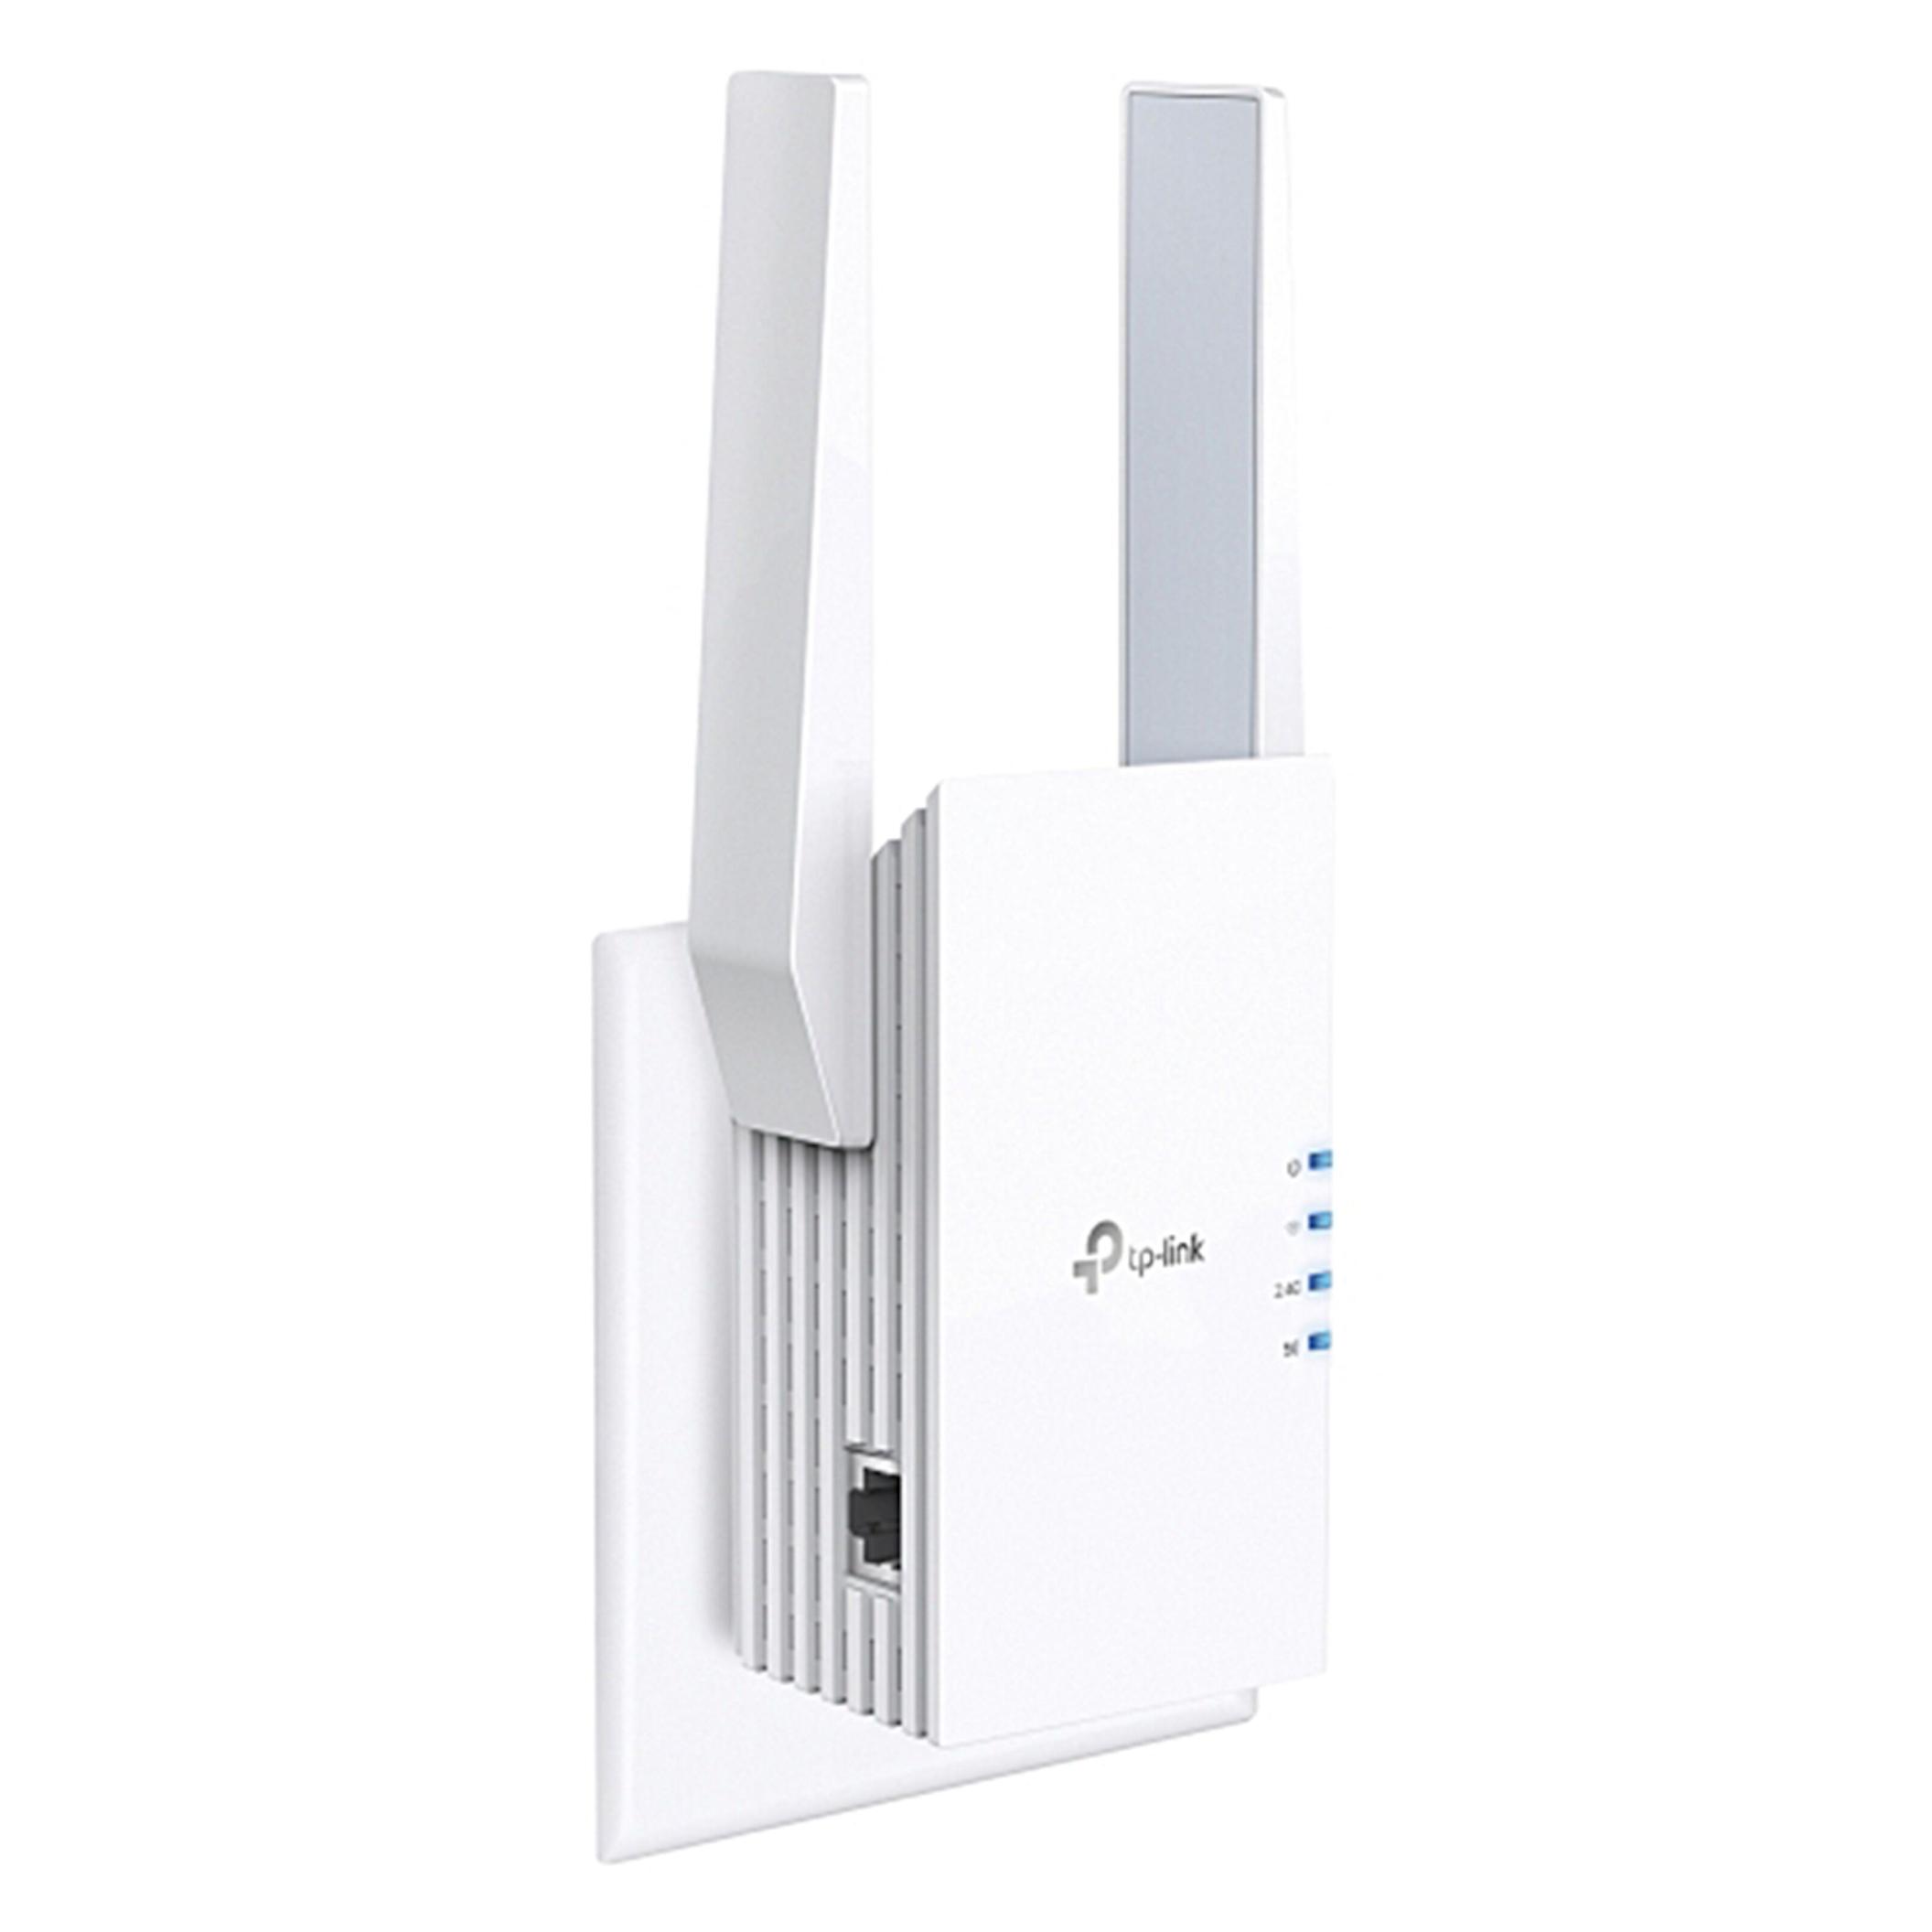 RE505X Wifi-repeater AX1500 för 659 kr på Kjell & Company